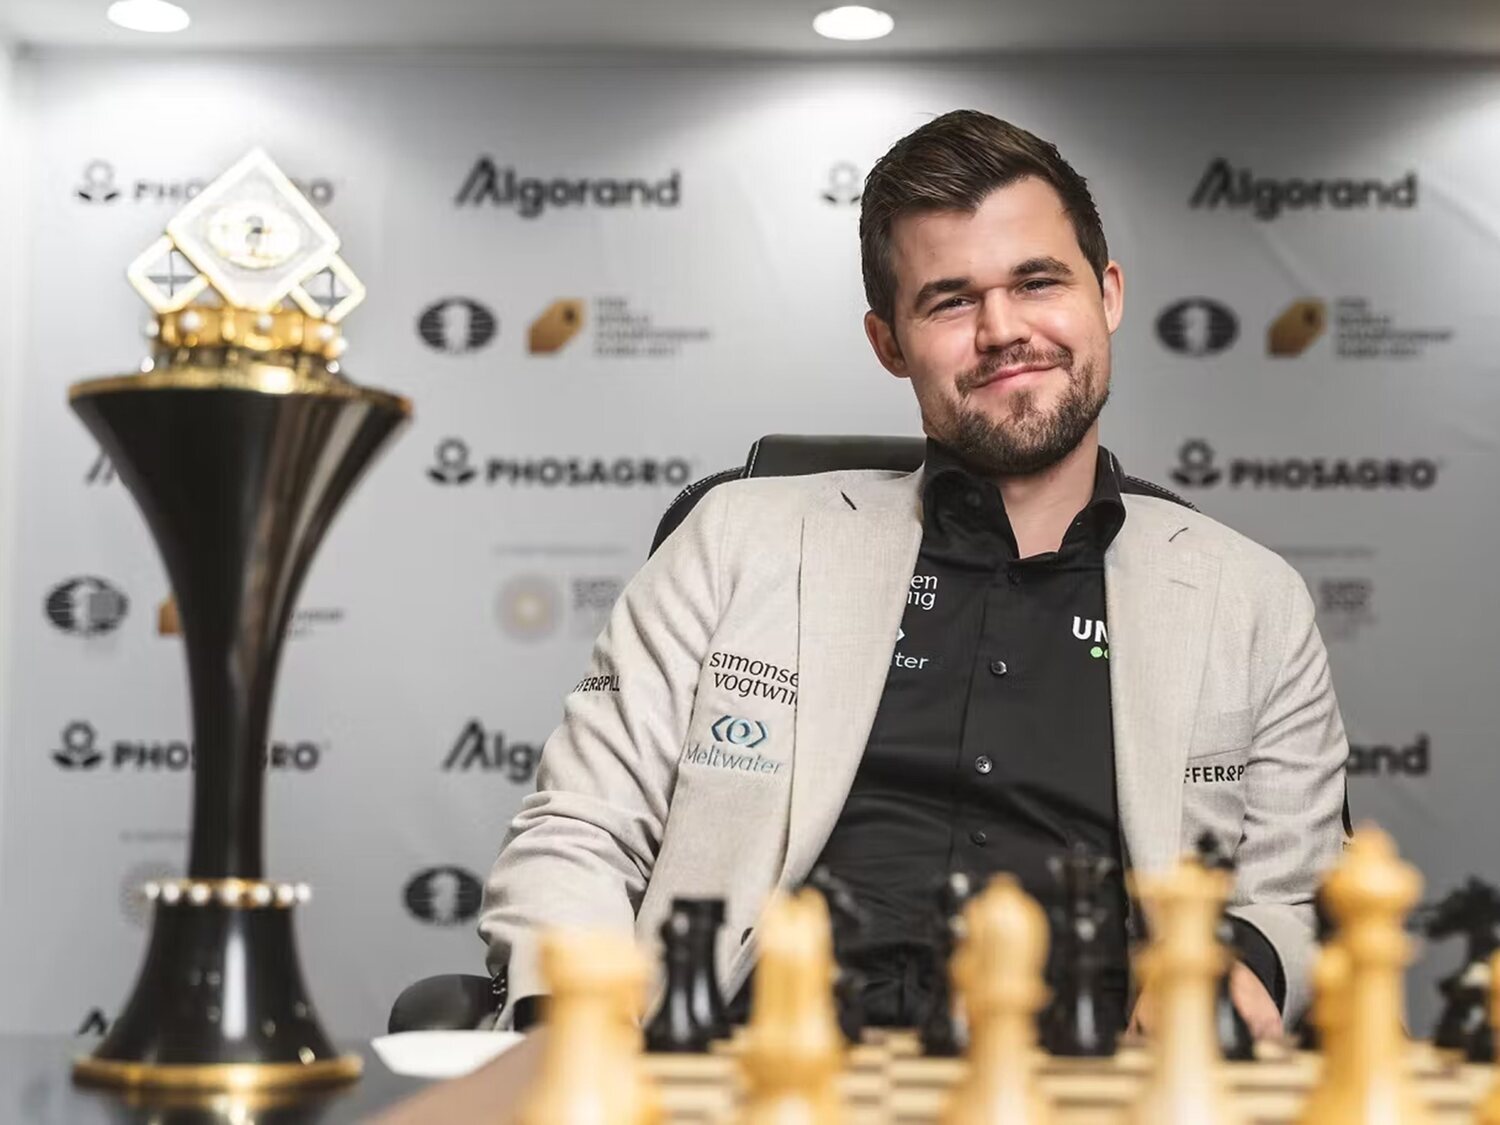 El campeón del mundo de ajedrez insinúa trampas de un rival con unas bolas chinas anales